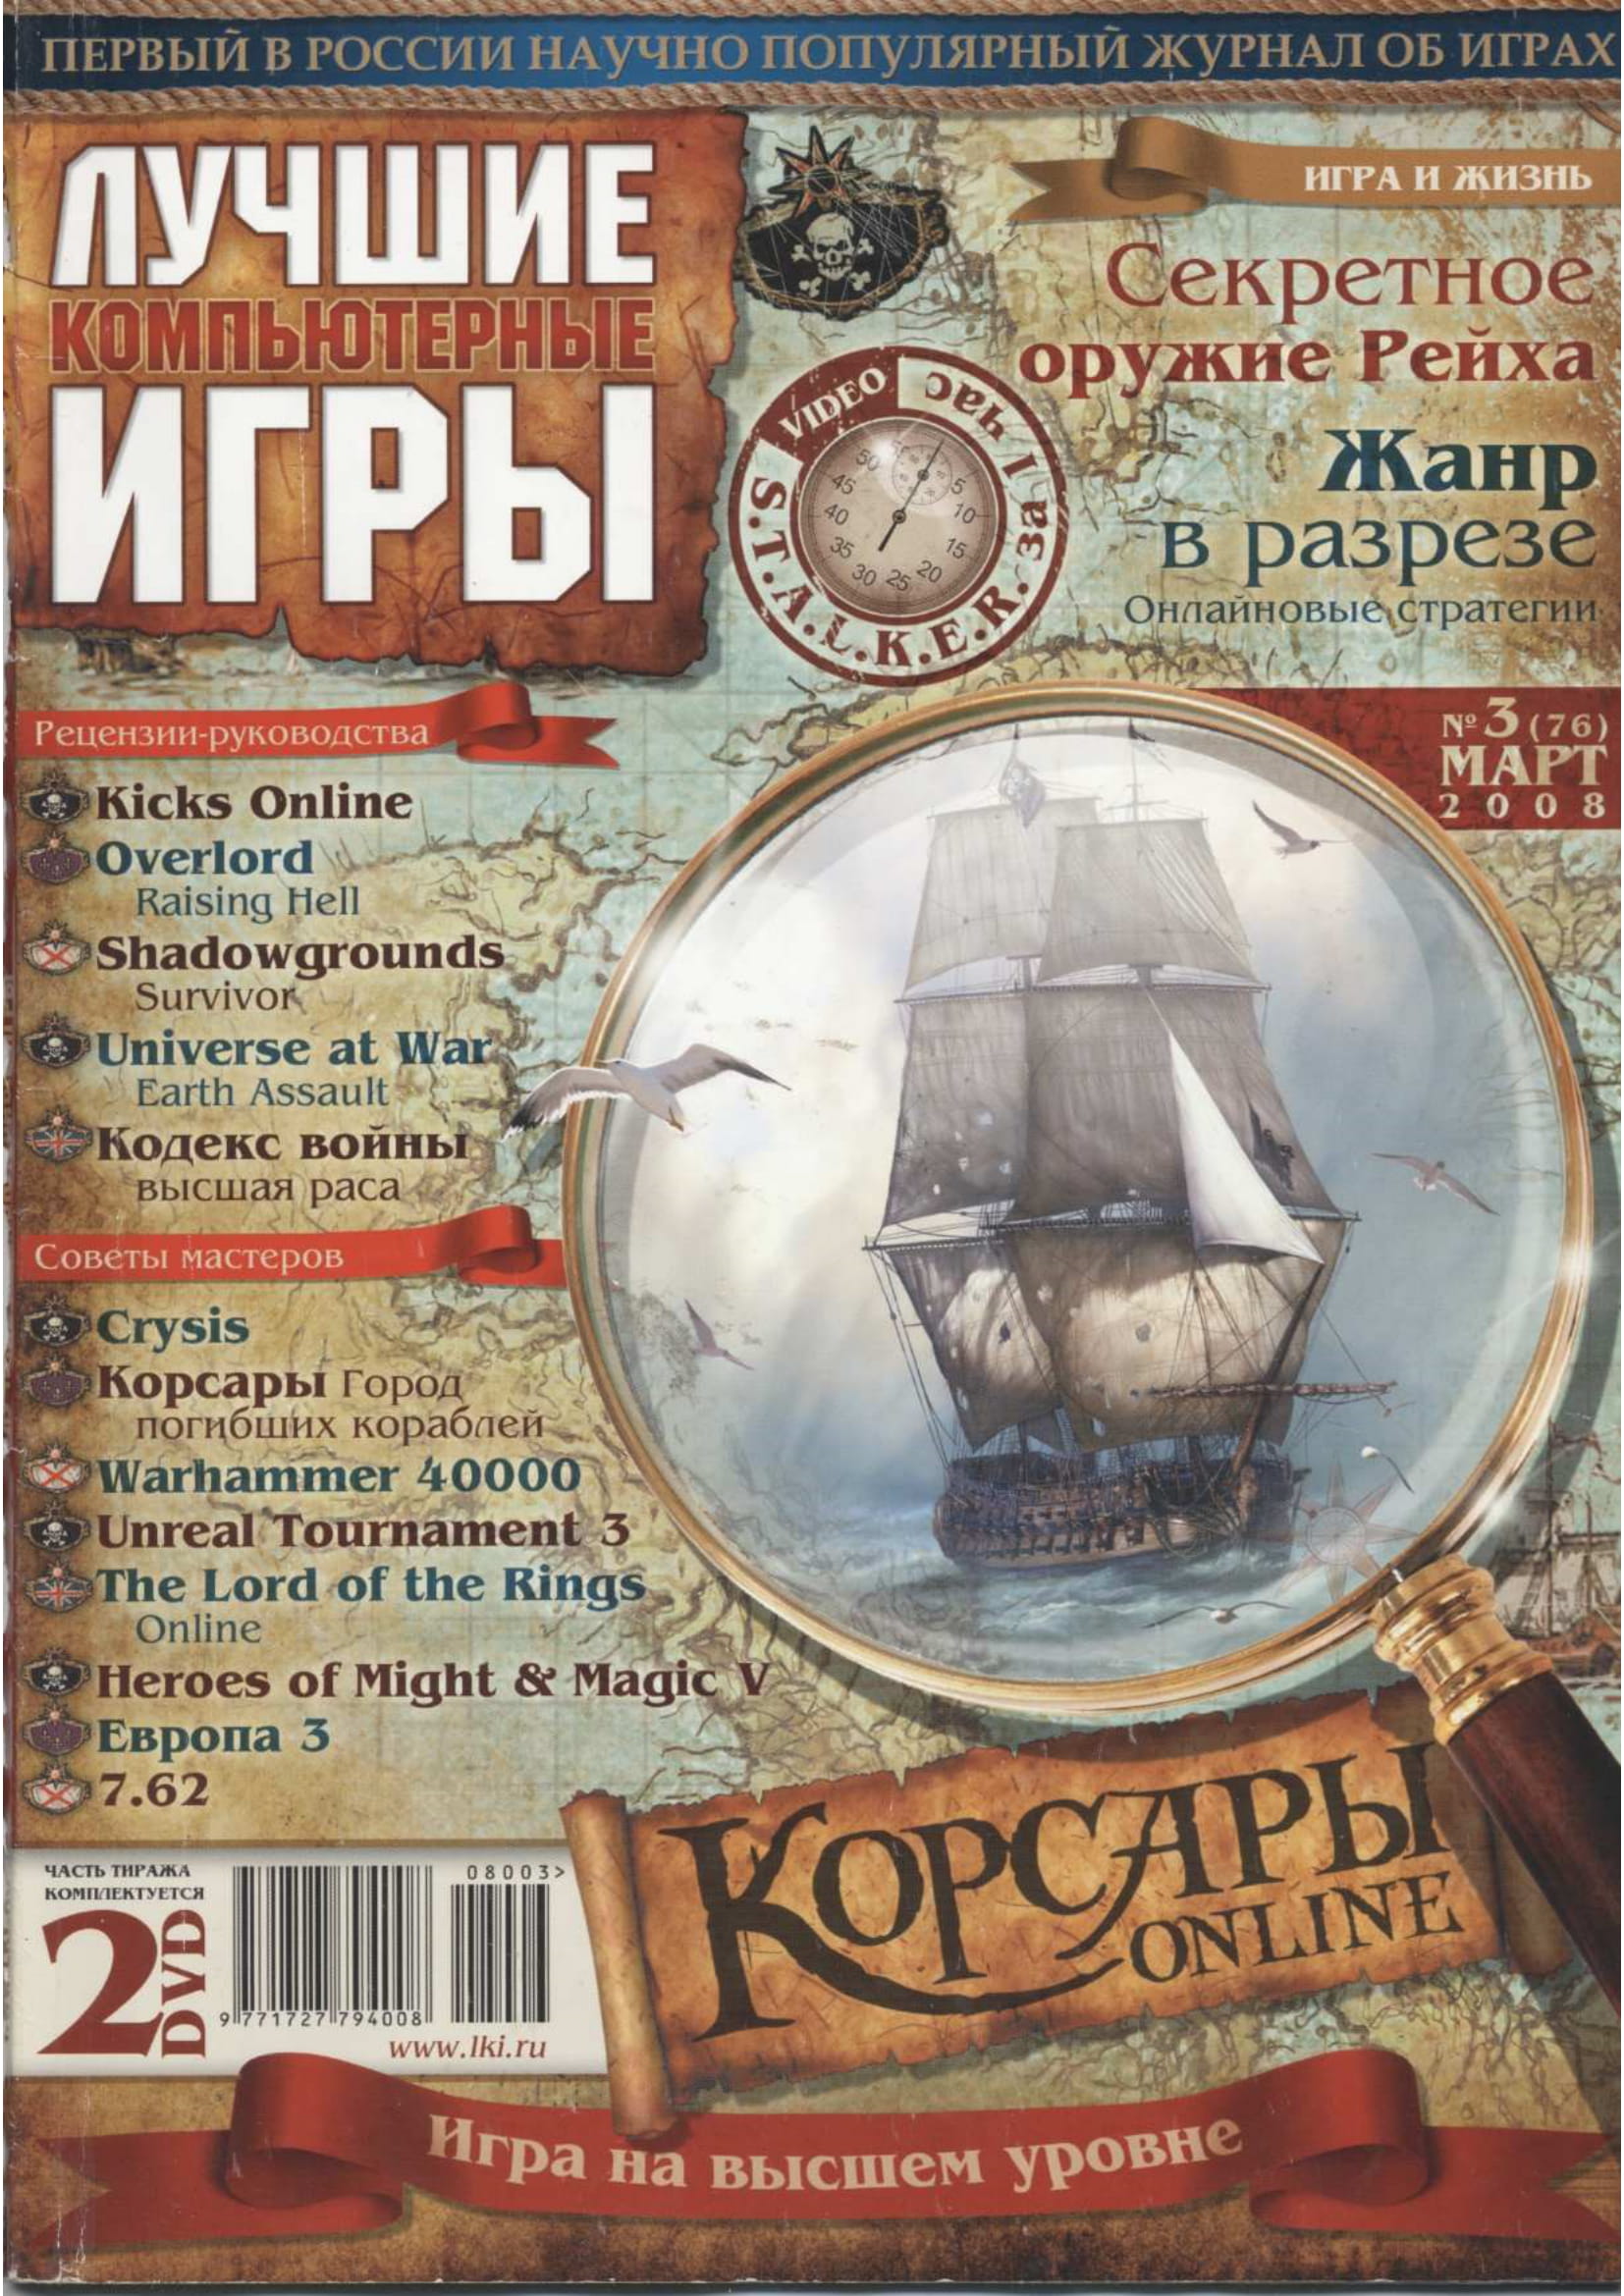 Обложка журнала Лучшие Компьютерные Игры за март, 2008 года.